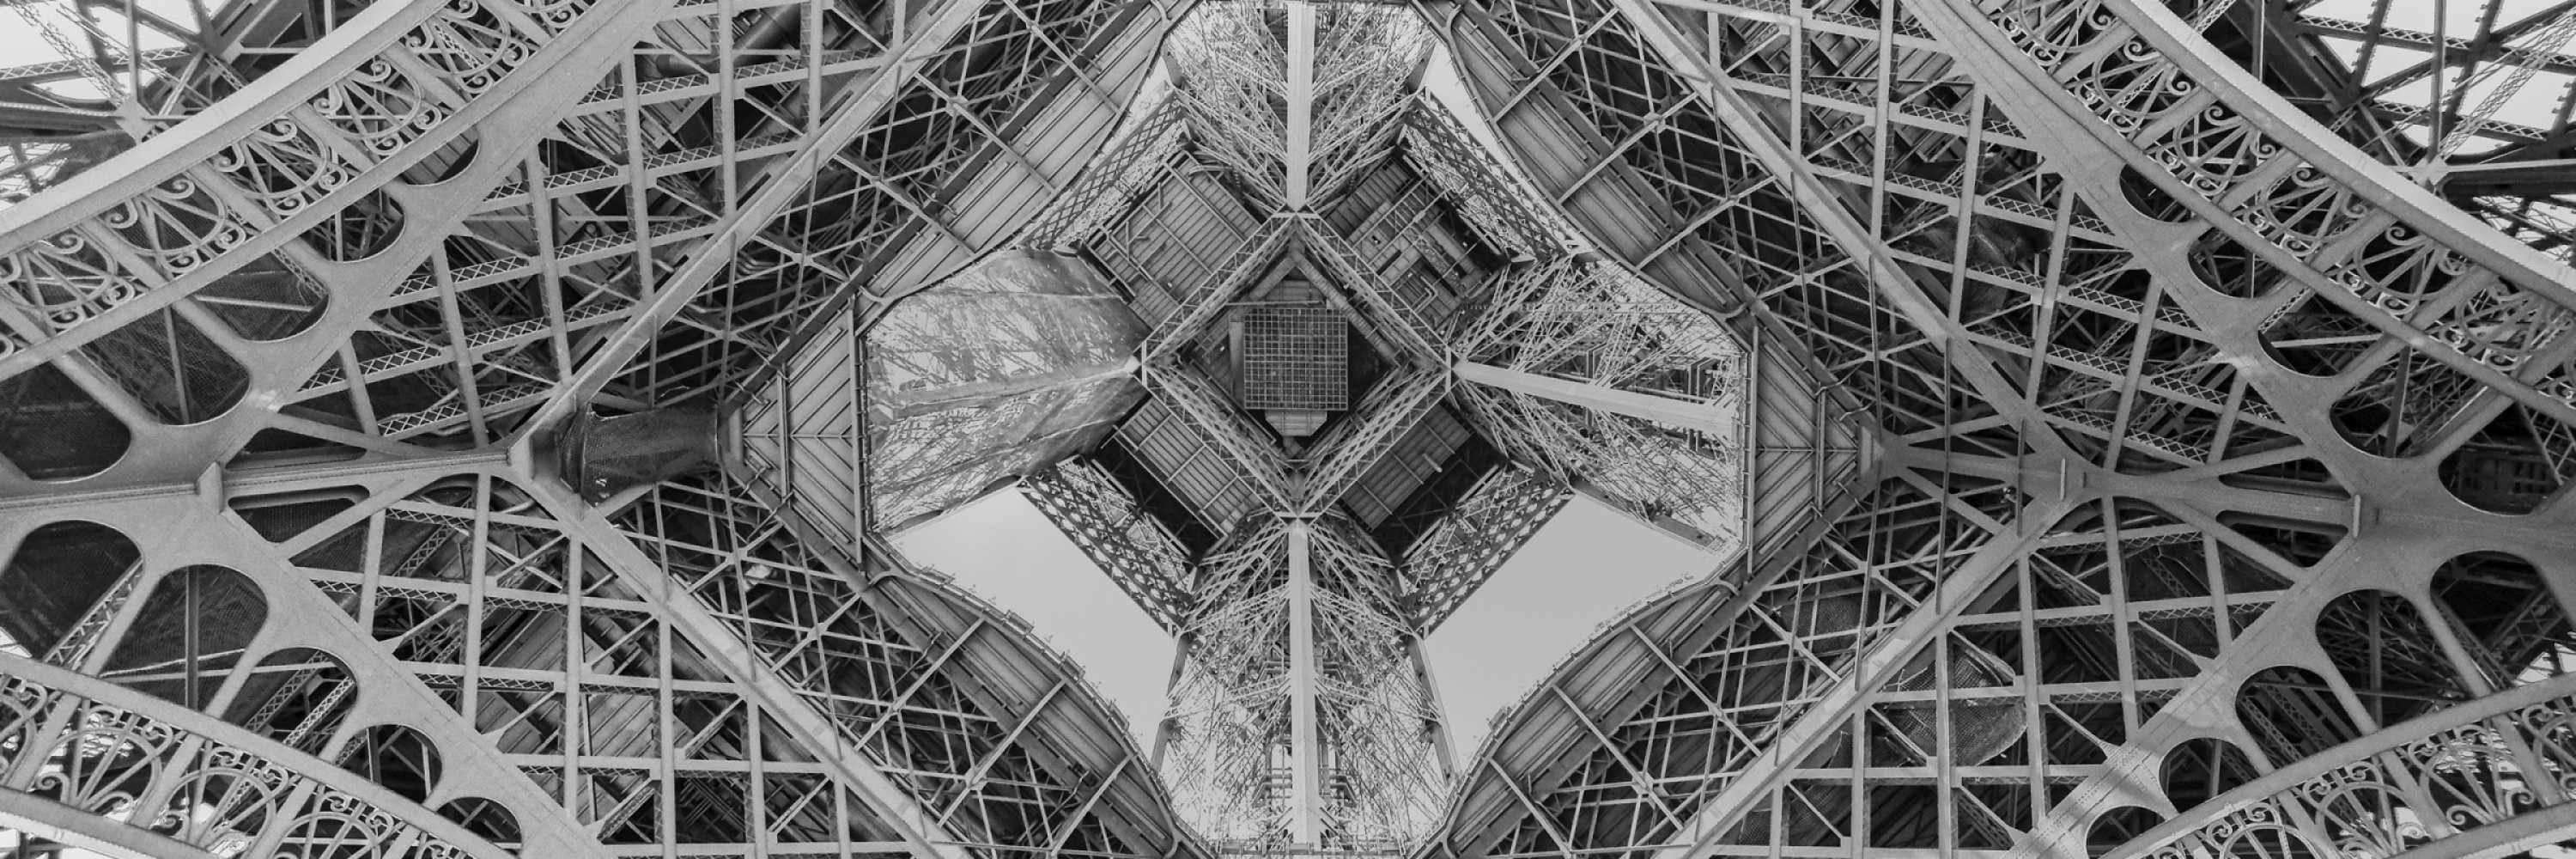 vue-de-sous-la-tour-effeil-paris-france-histoire-graphique-contraste-manufacture-patrimoine-engament-noir-et-blanc.jpg